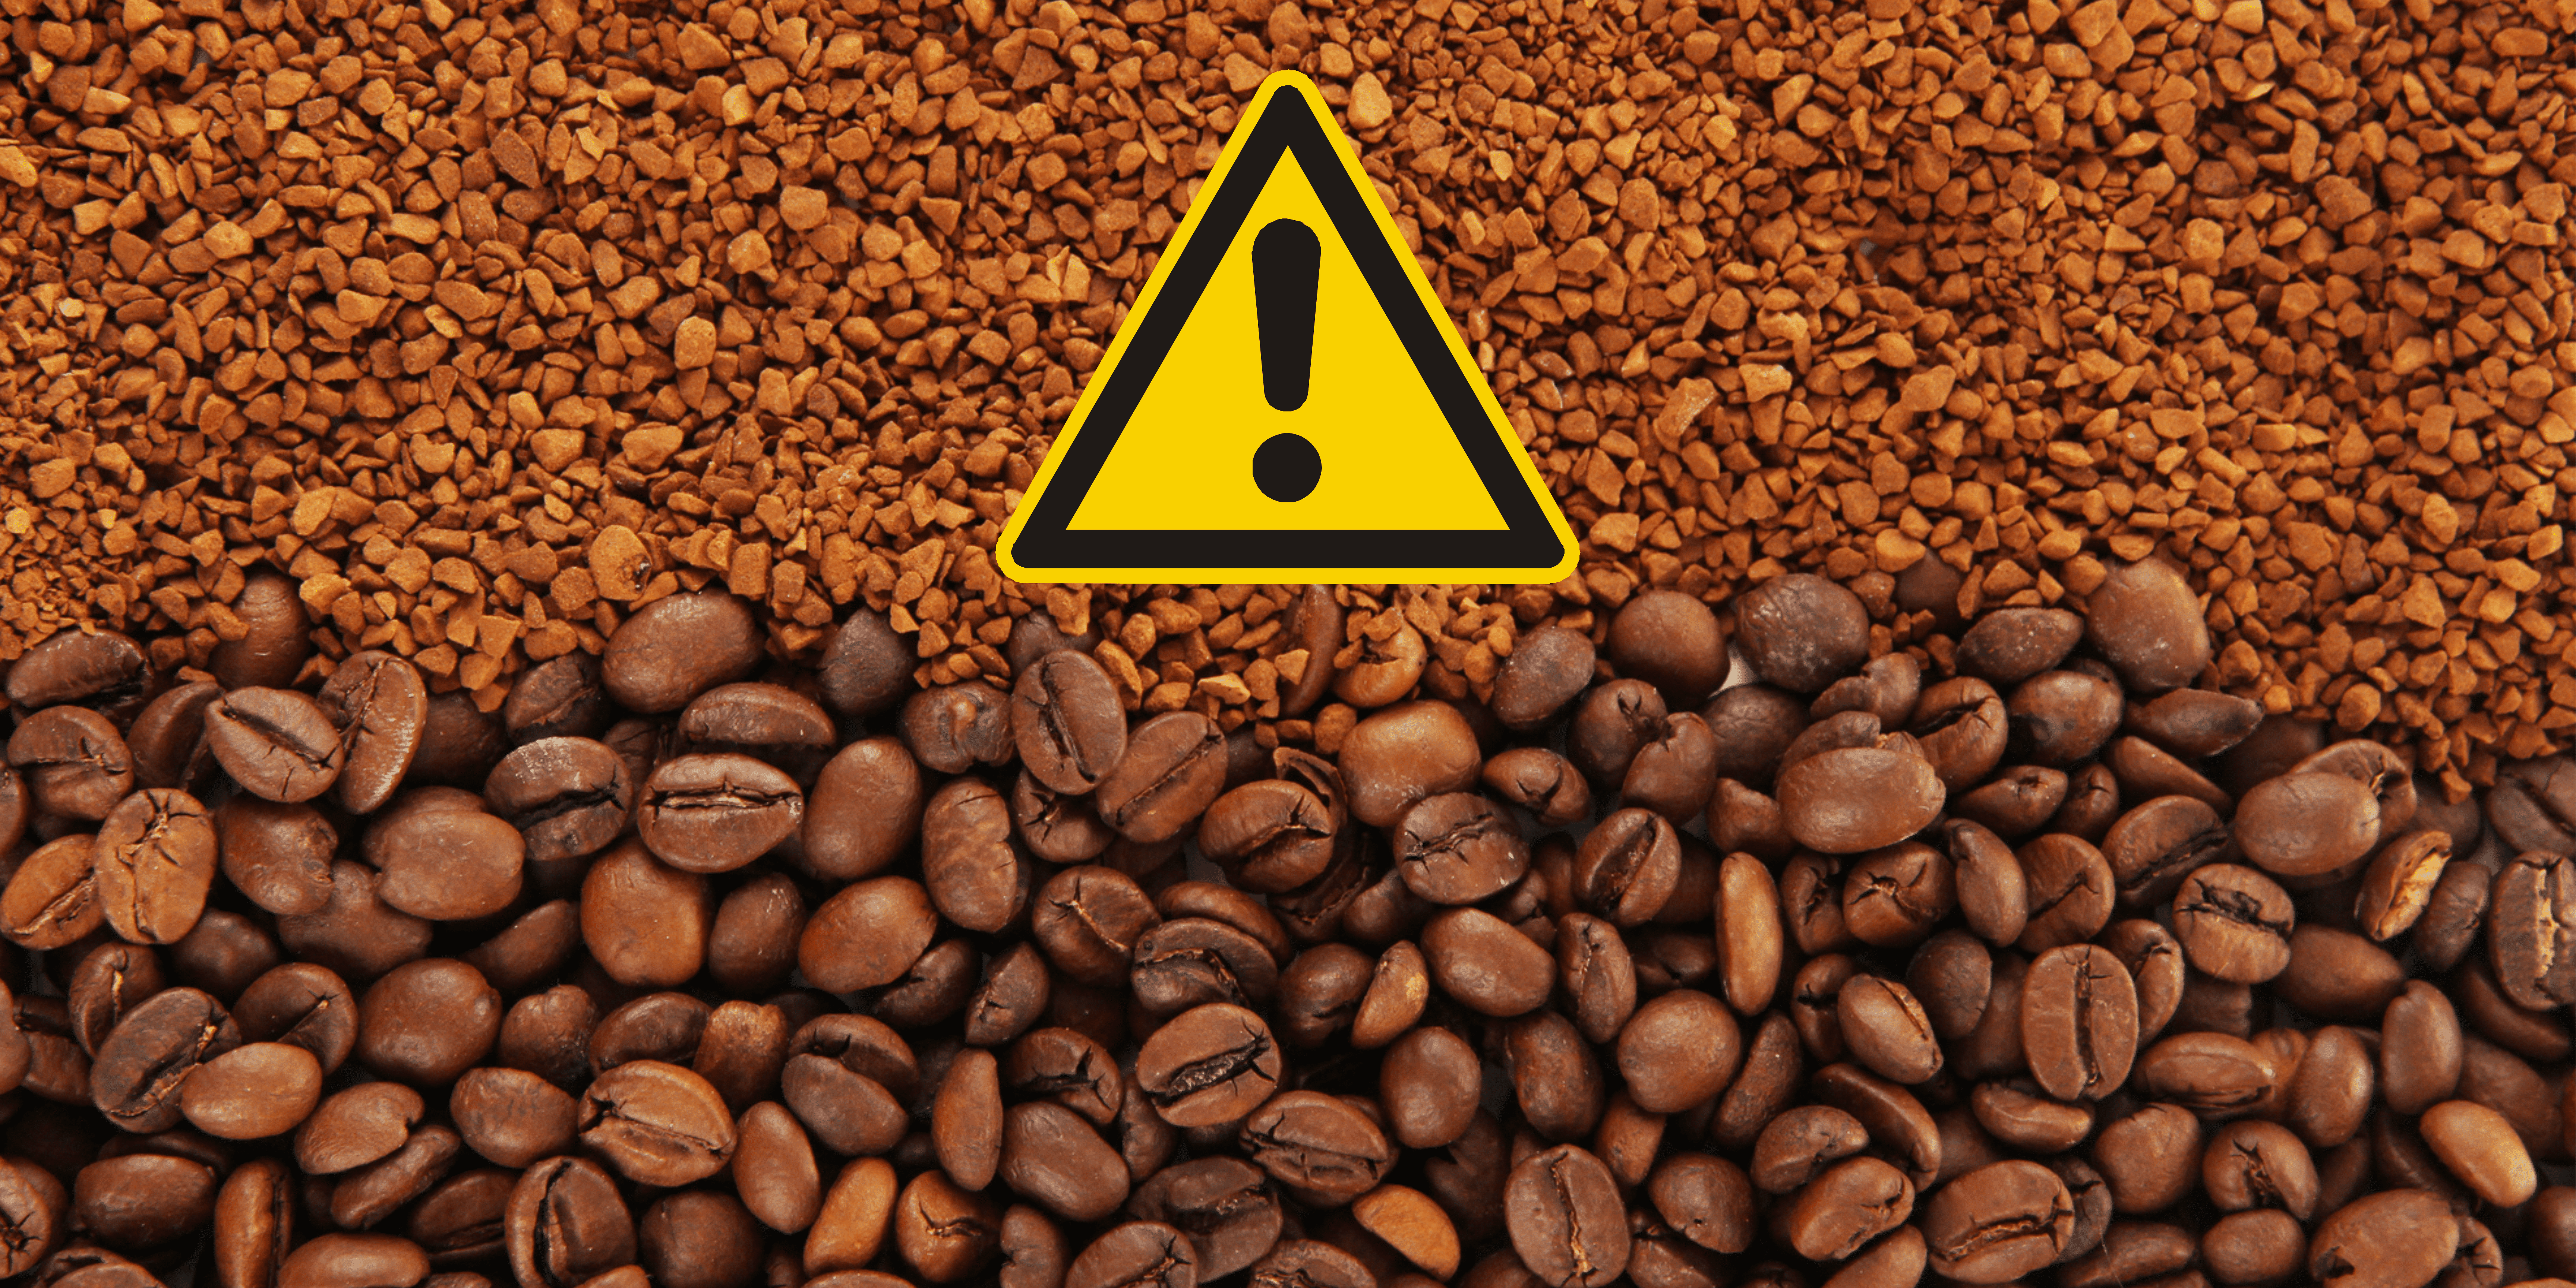 Le café lyophilisé est-il dangereux pour la santé